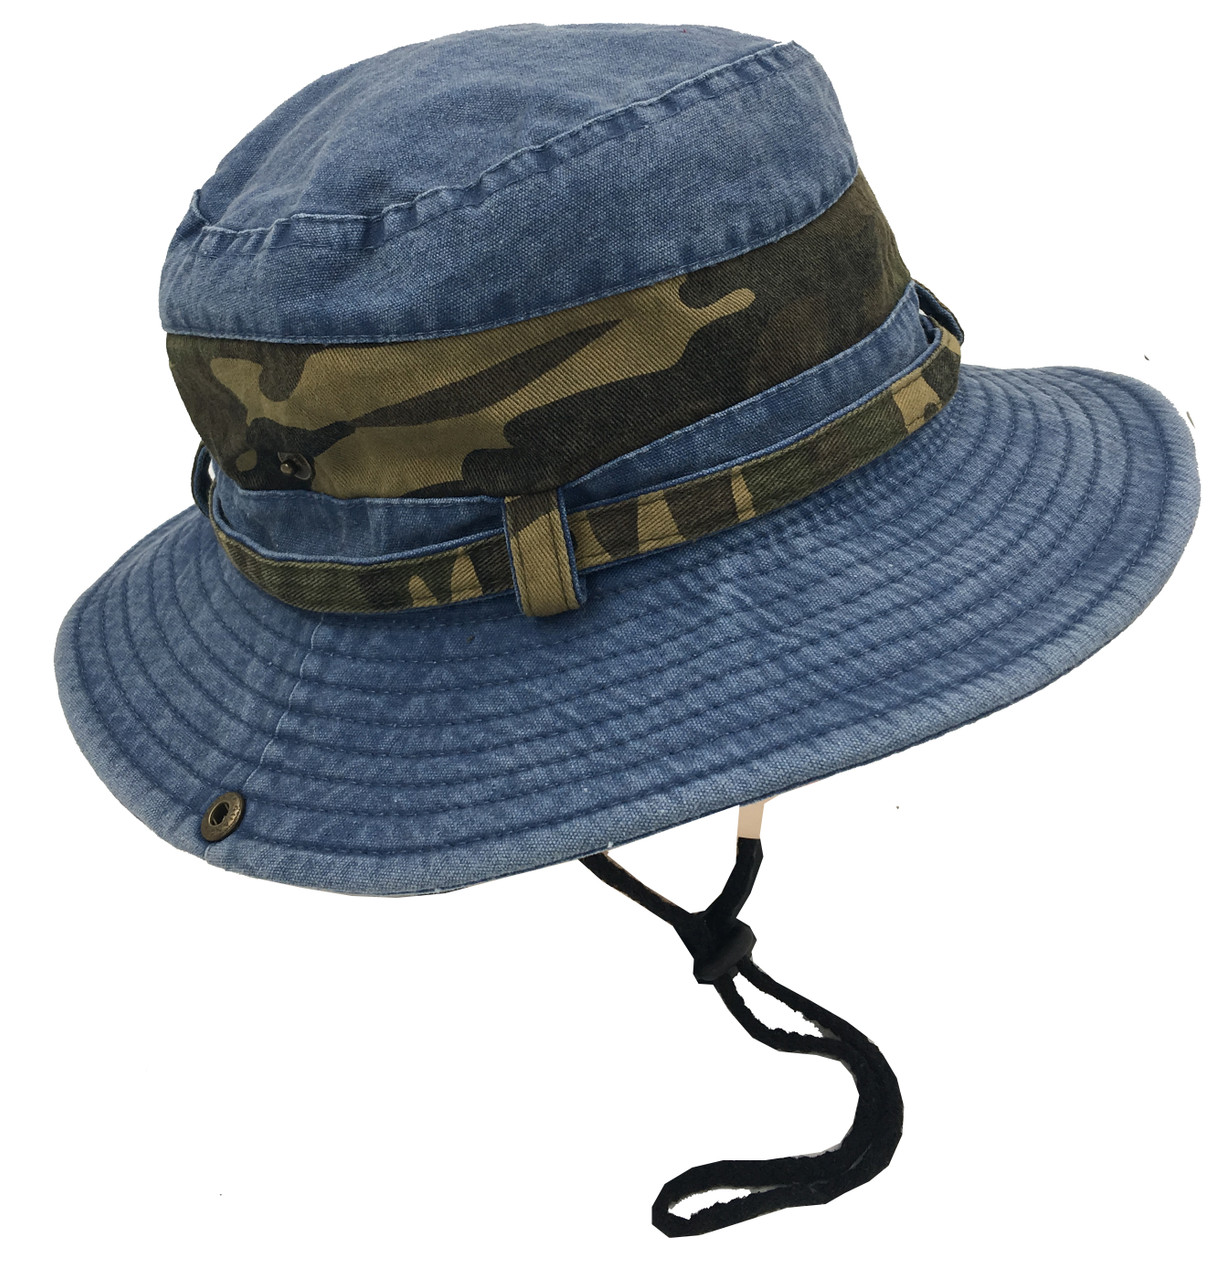 safari hat in bulk